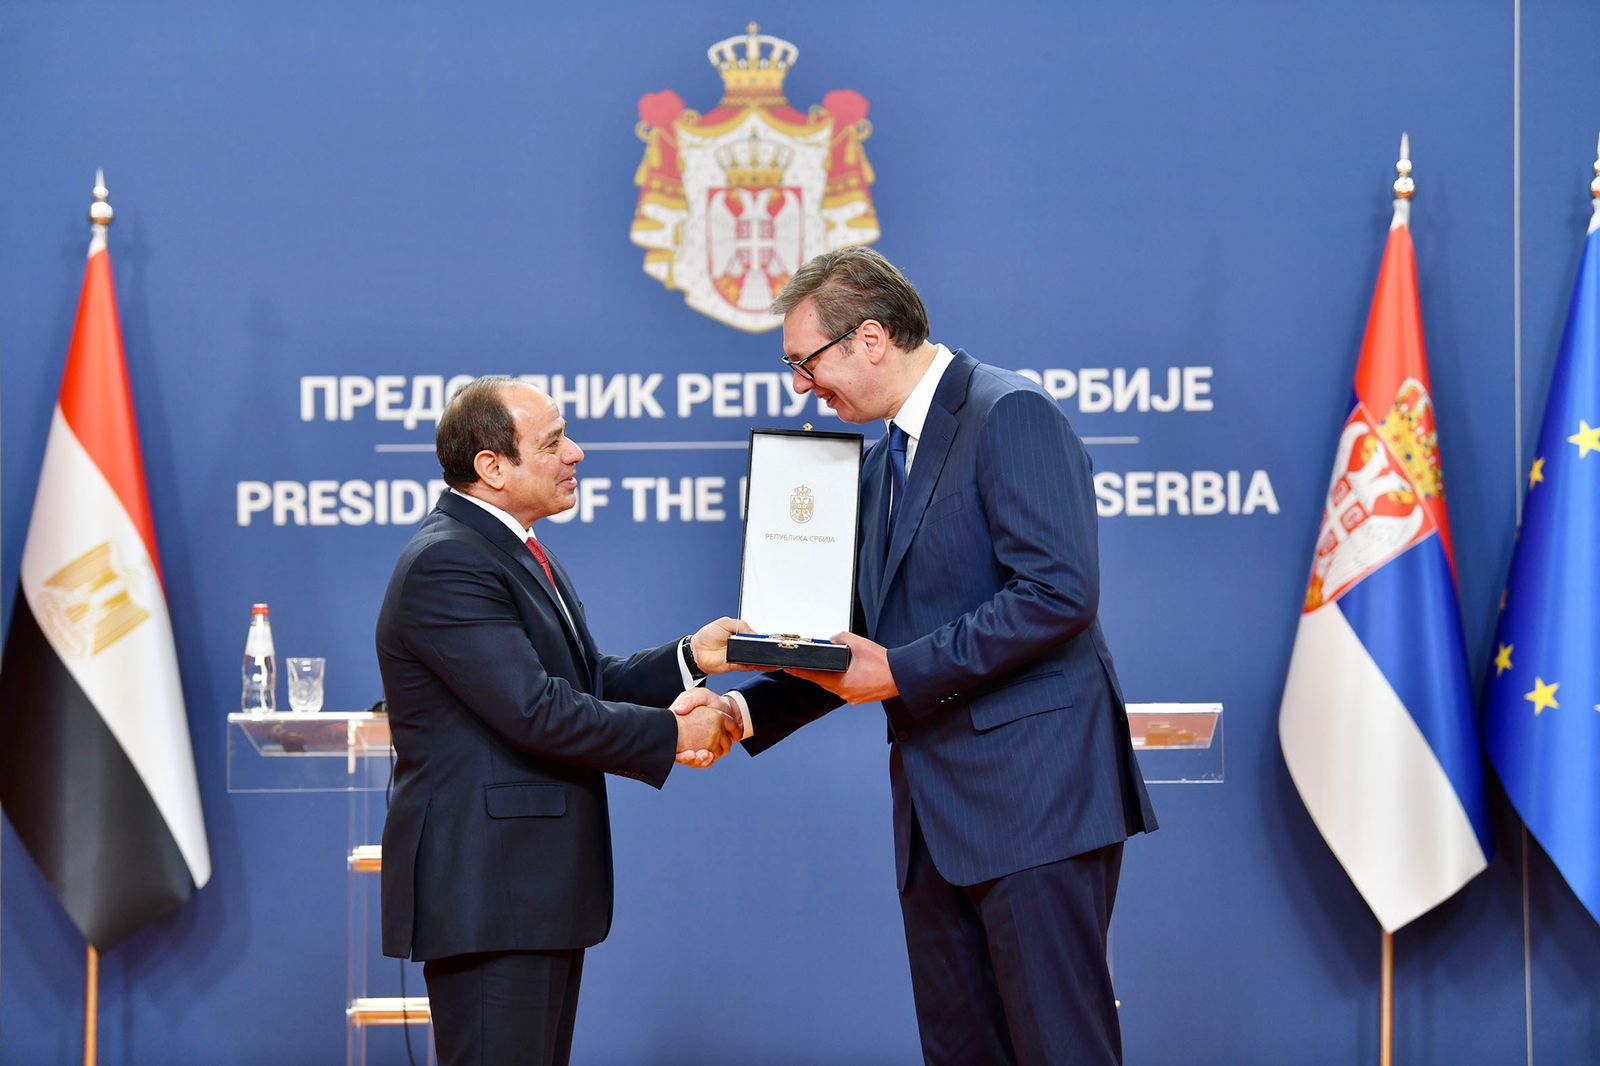 فعاليات زيارة الرئيس السيسي إلى صربيا